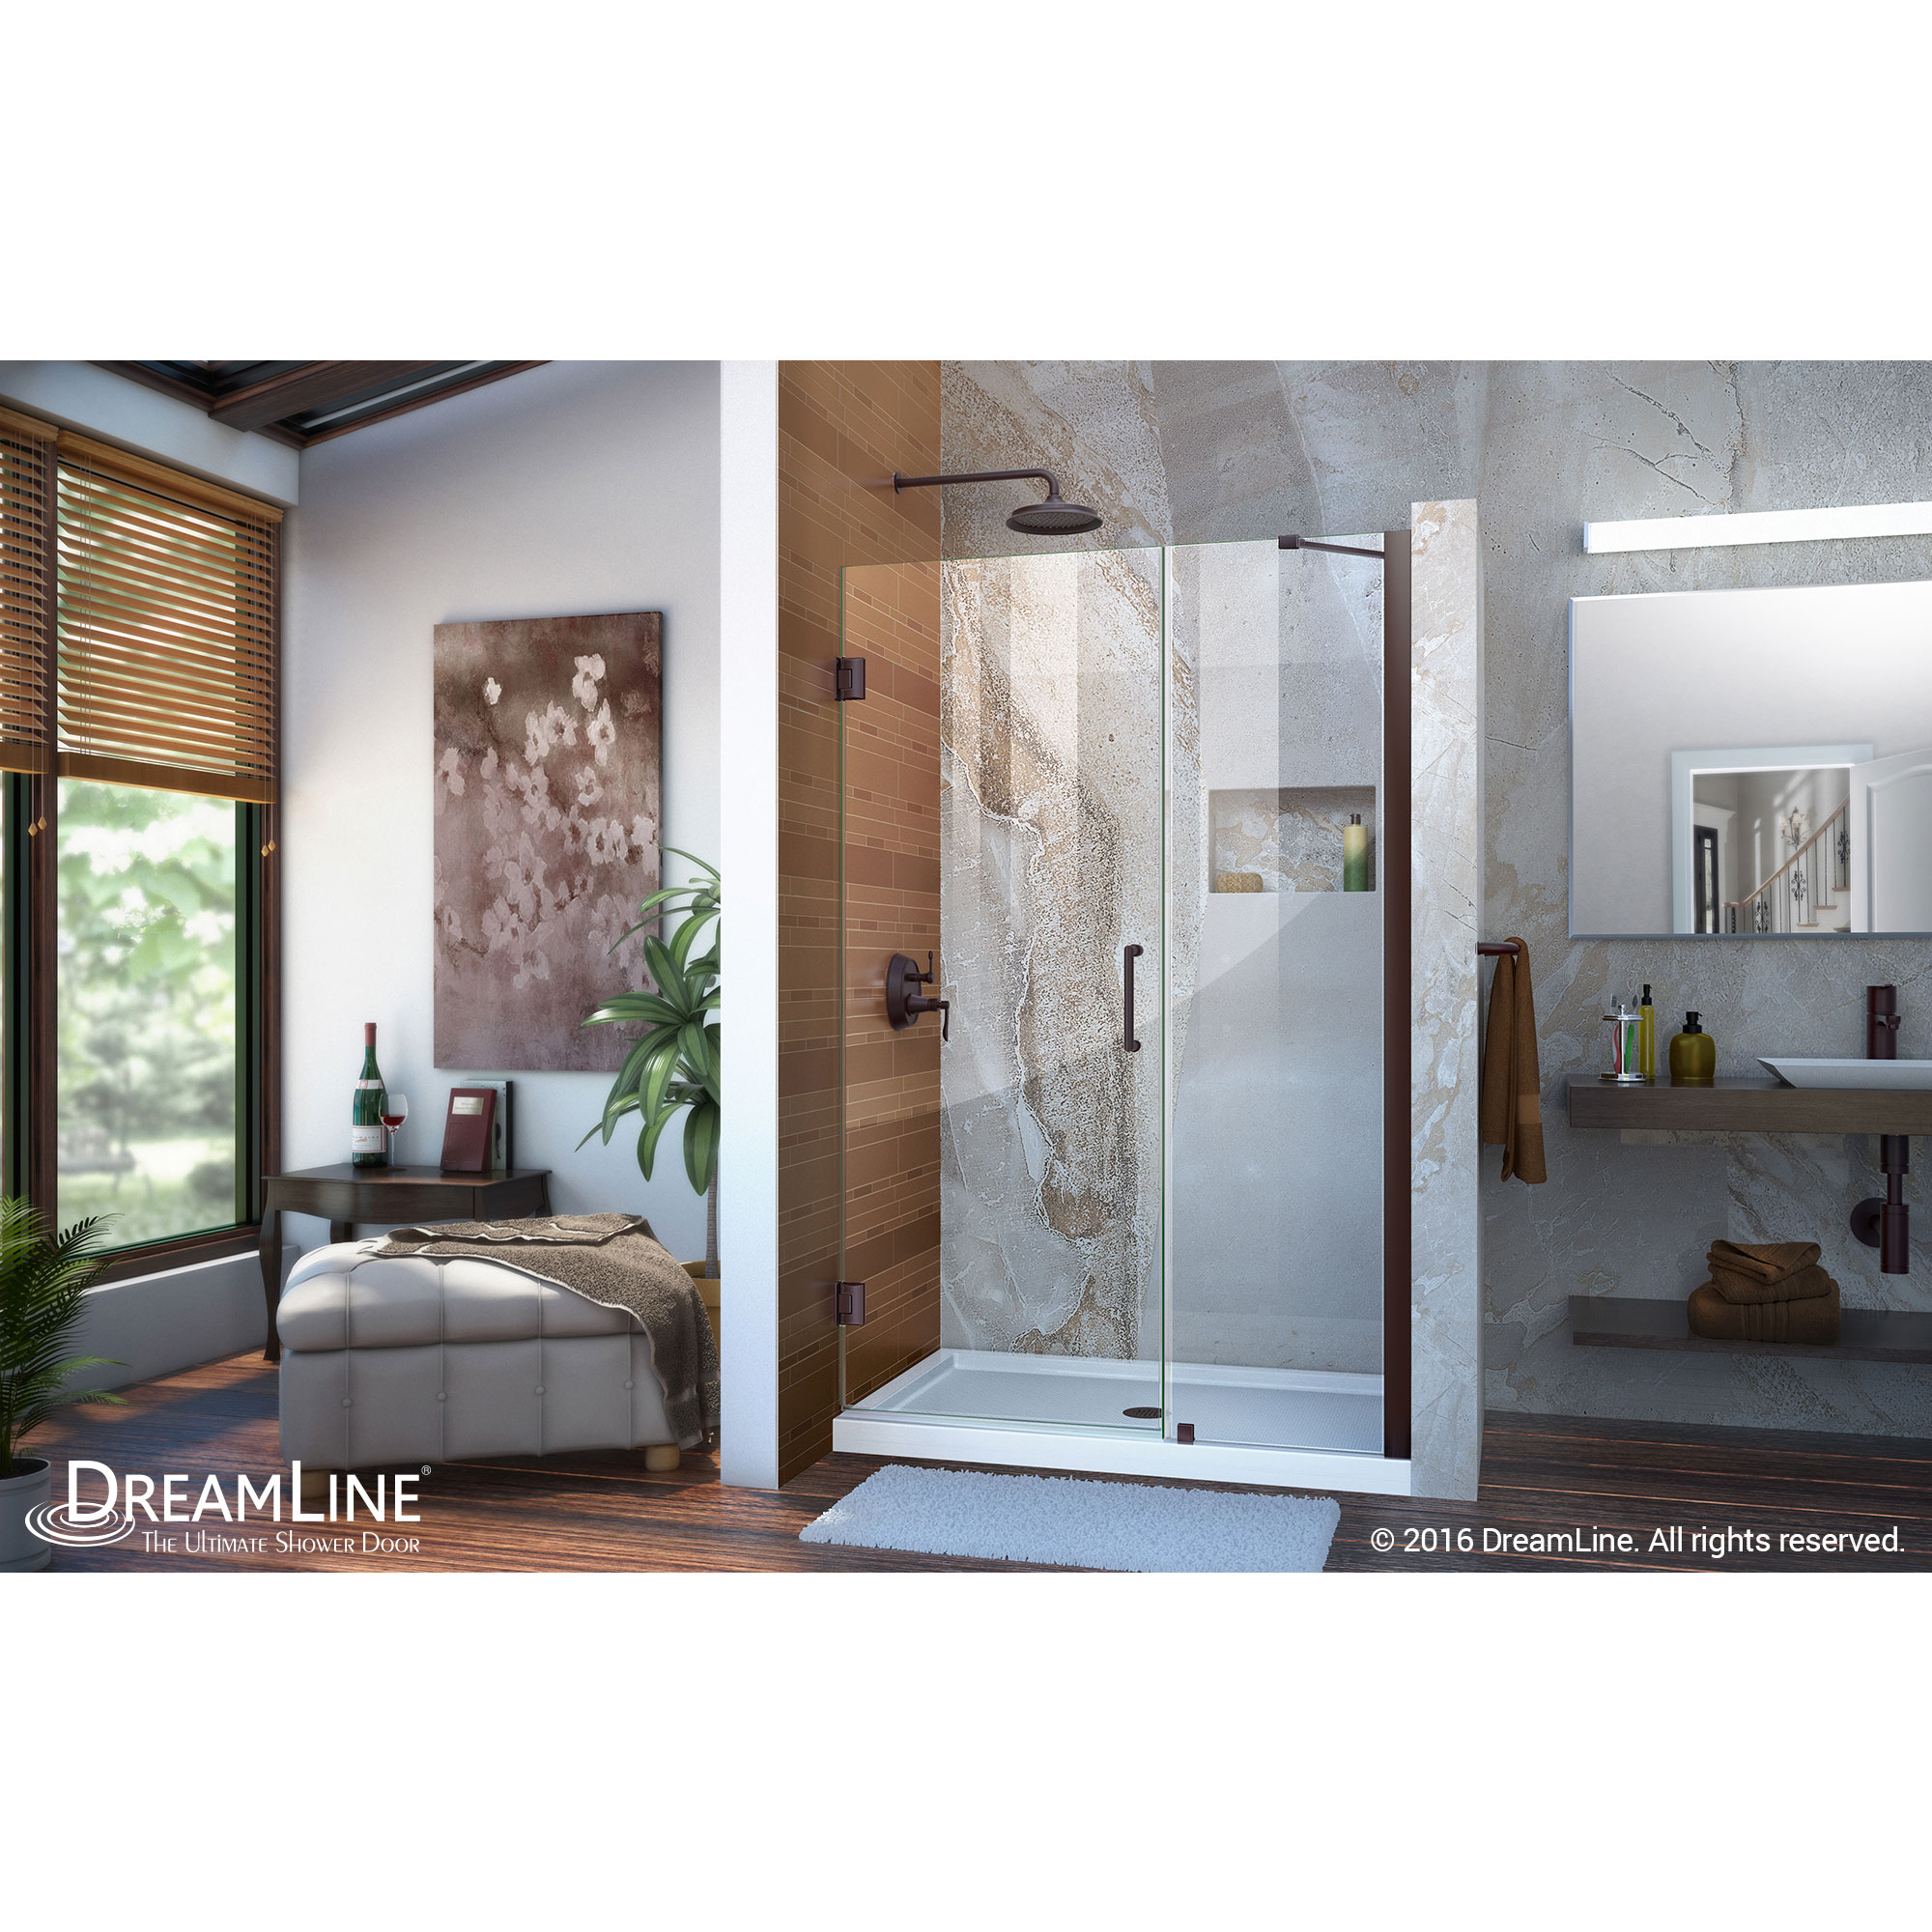 Unidoor 47 to 48" Frameless Hinged Shower Door, Clear 3/8" Glass Door, Oil Rubbed Bronze